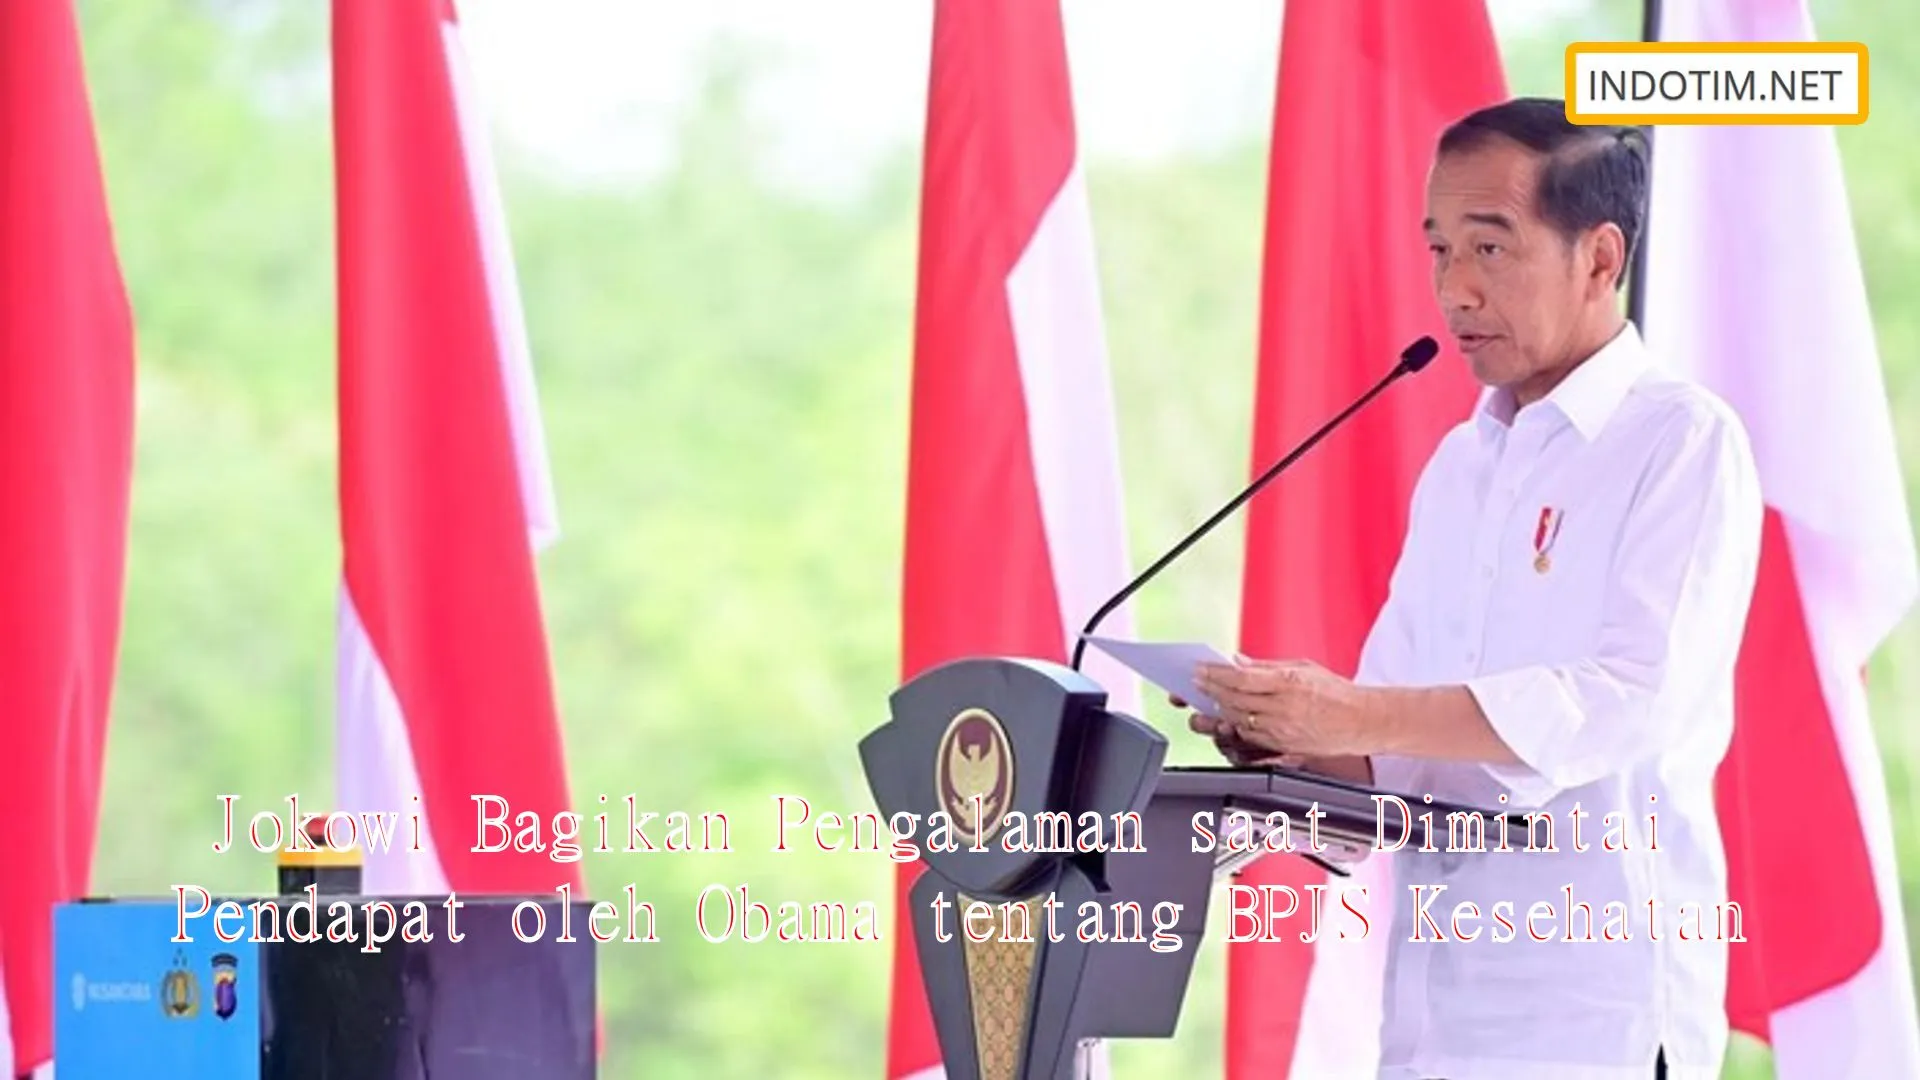 Jokowi Bagikan Pengalaman saat Dimintai Pendapat oleh Obama tentang BPJS Kesehatan